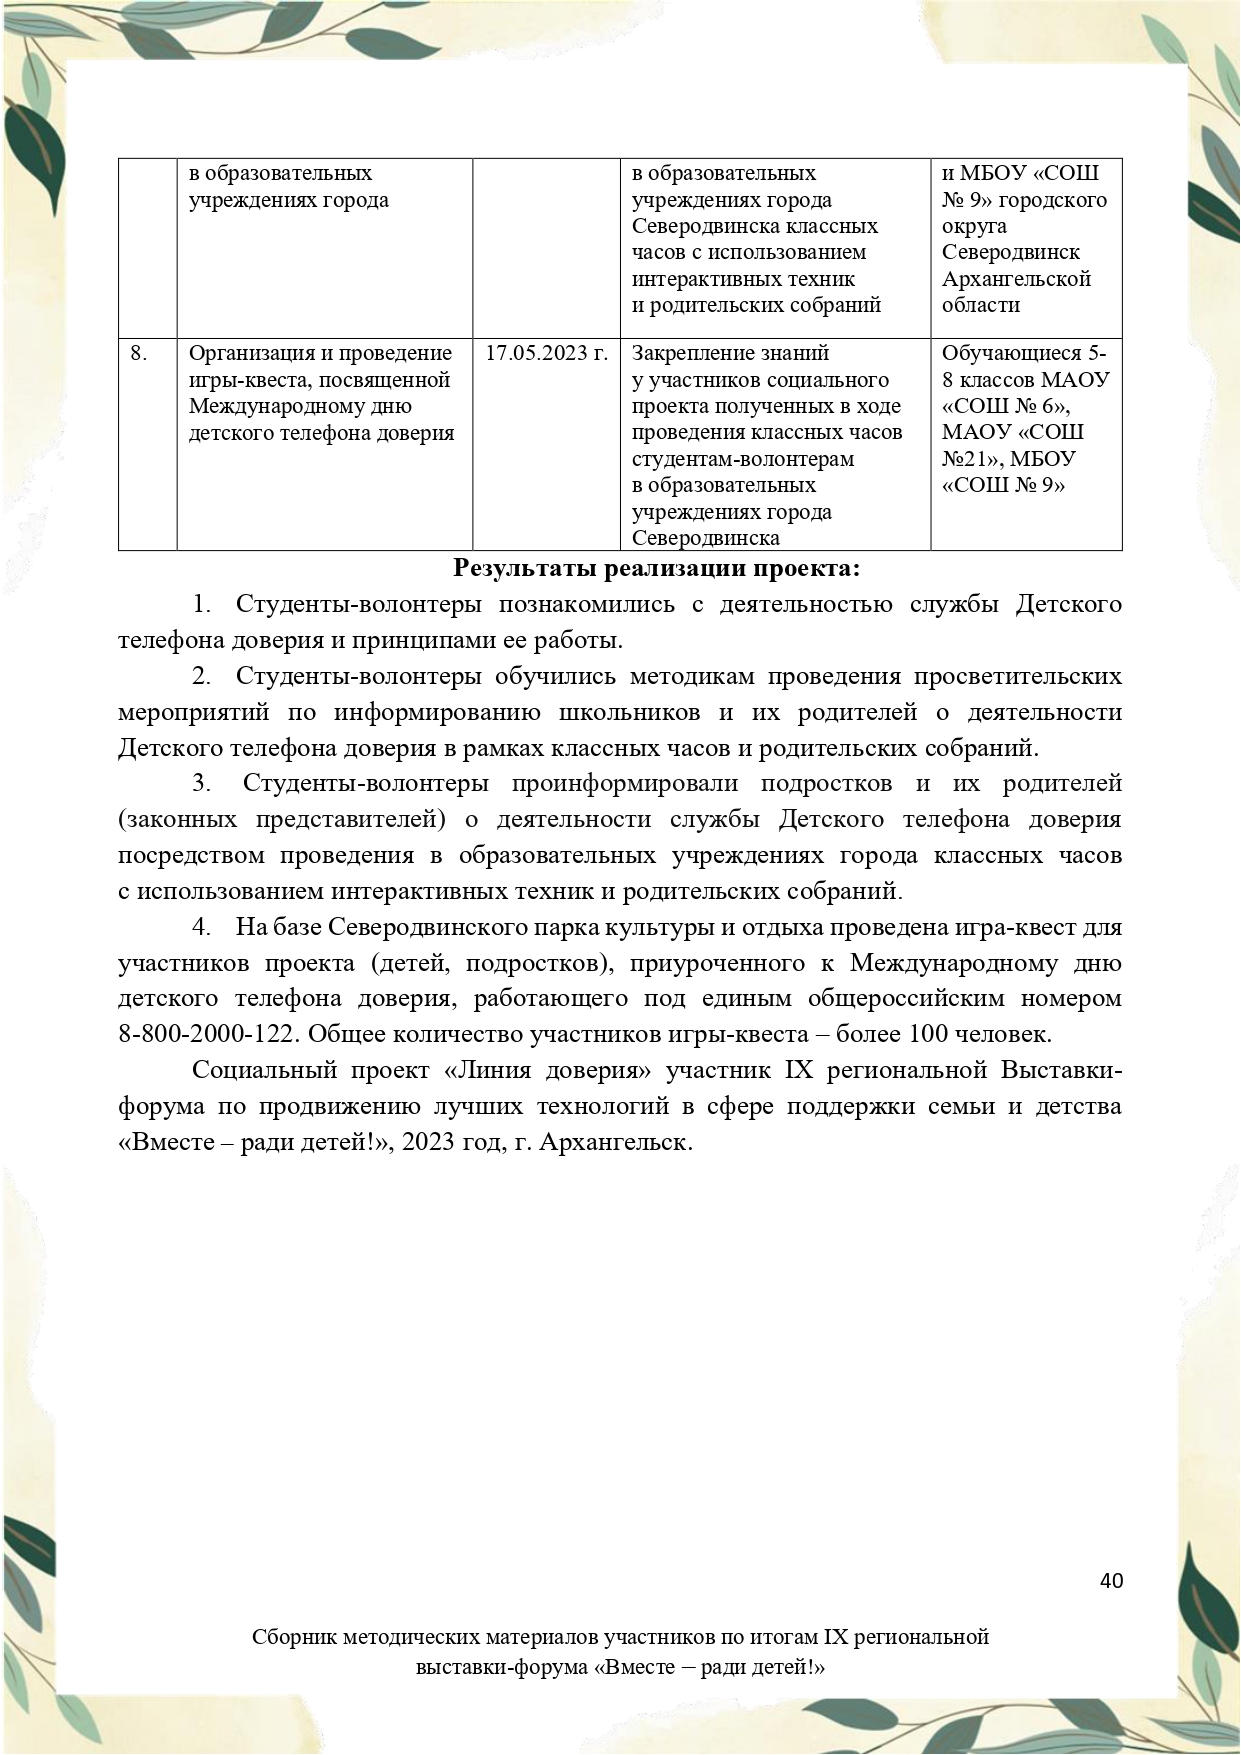 Sbornik_metodicheskikh_materialov_uchastnikov_IX_regionalnoy_vystavki-foruma_Vmeste__radi_detey_33__2023_page-0040